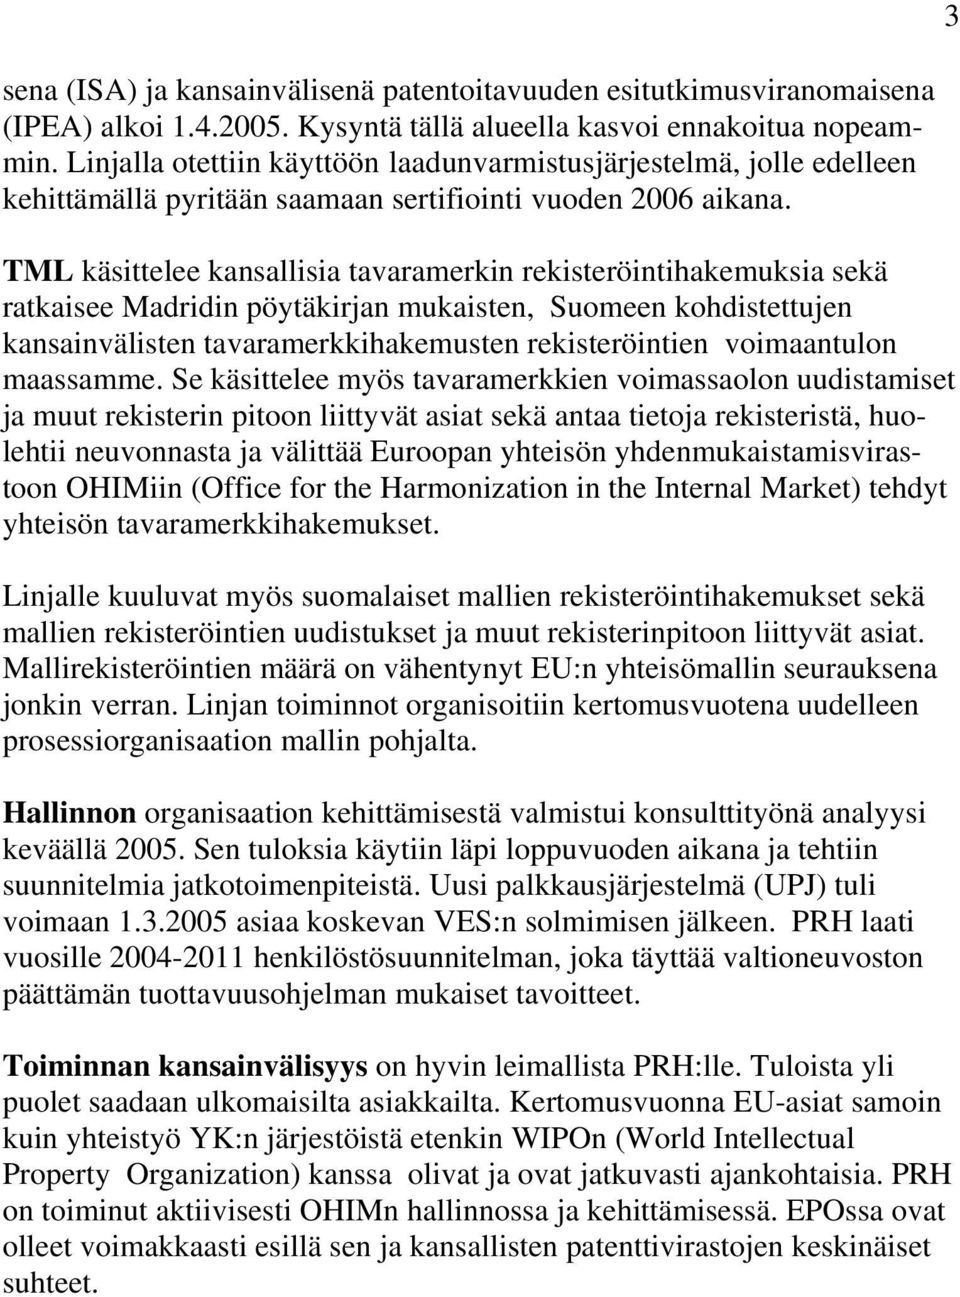 TML käsittelee kansallisia tavaramerkin rekisteröintihakemuksia sekä ratkaisee Madridin pöytäkirjan mukaisten, Suomeen kohdistettujen kansainvälisten tavaramerkkihakemusten rekisteröintien